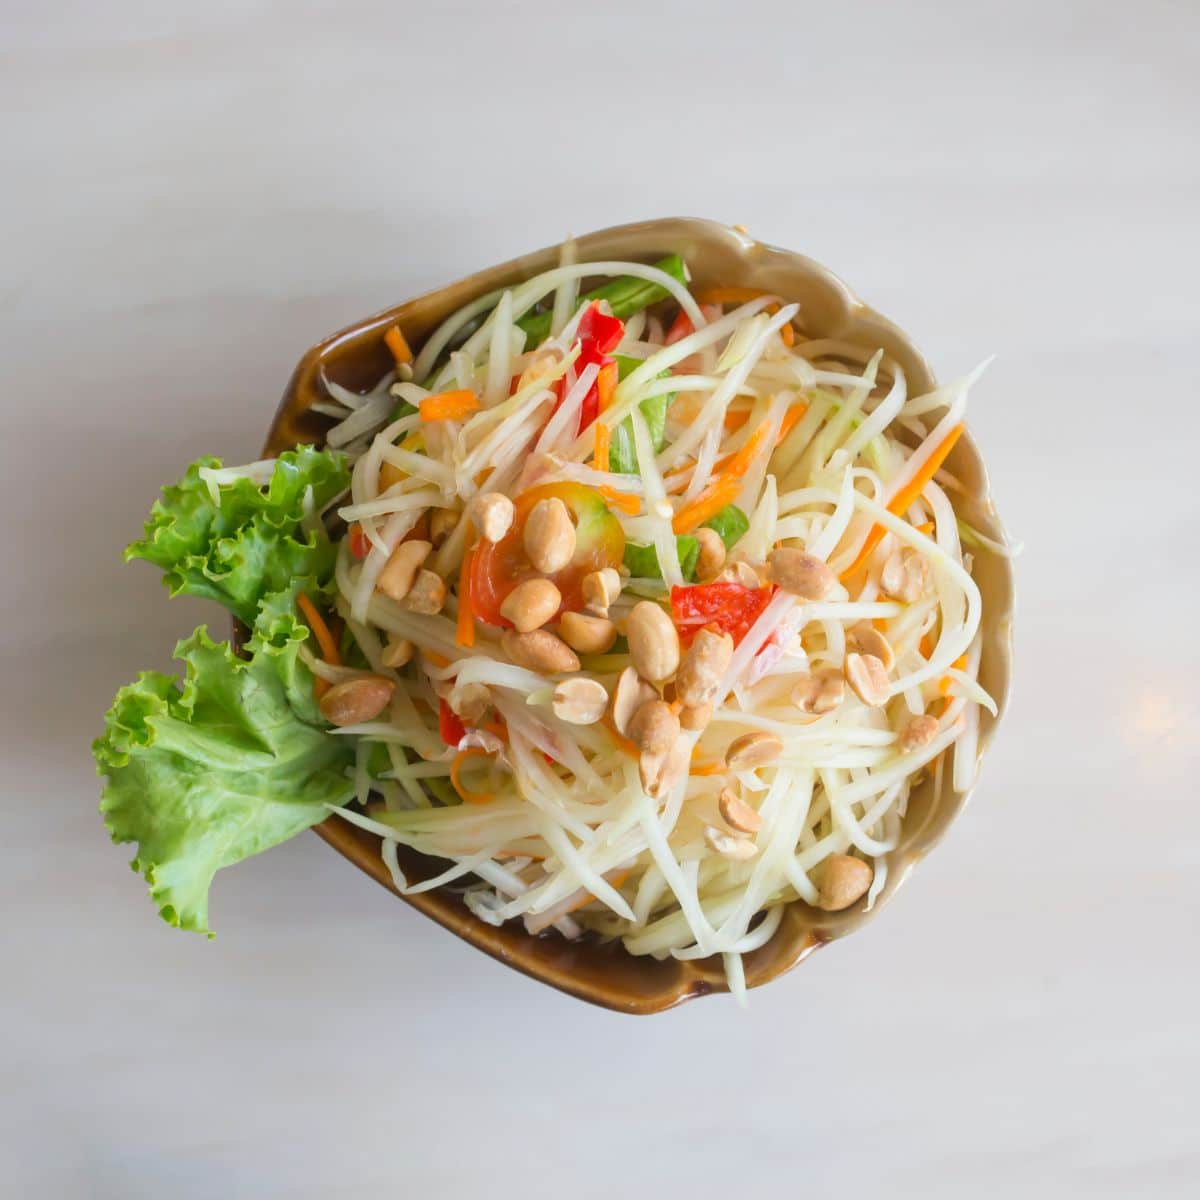 thai-som-tum-salad